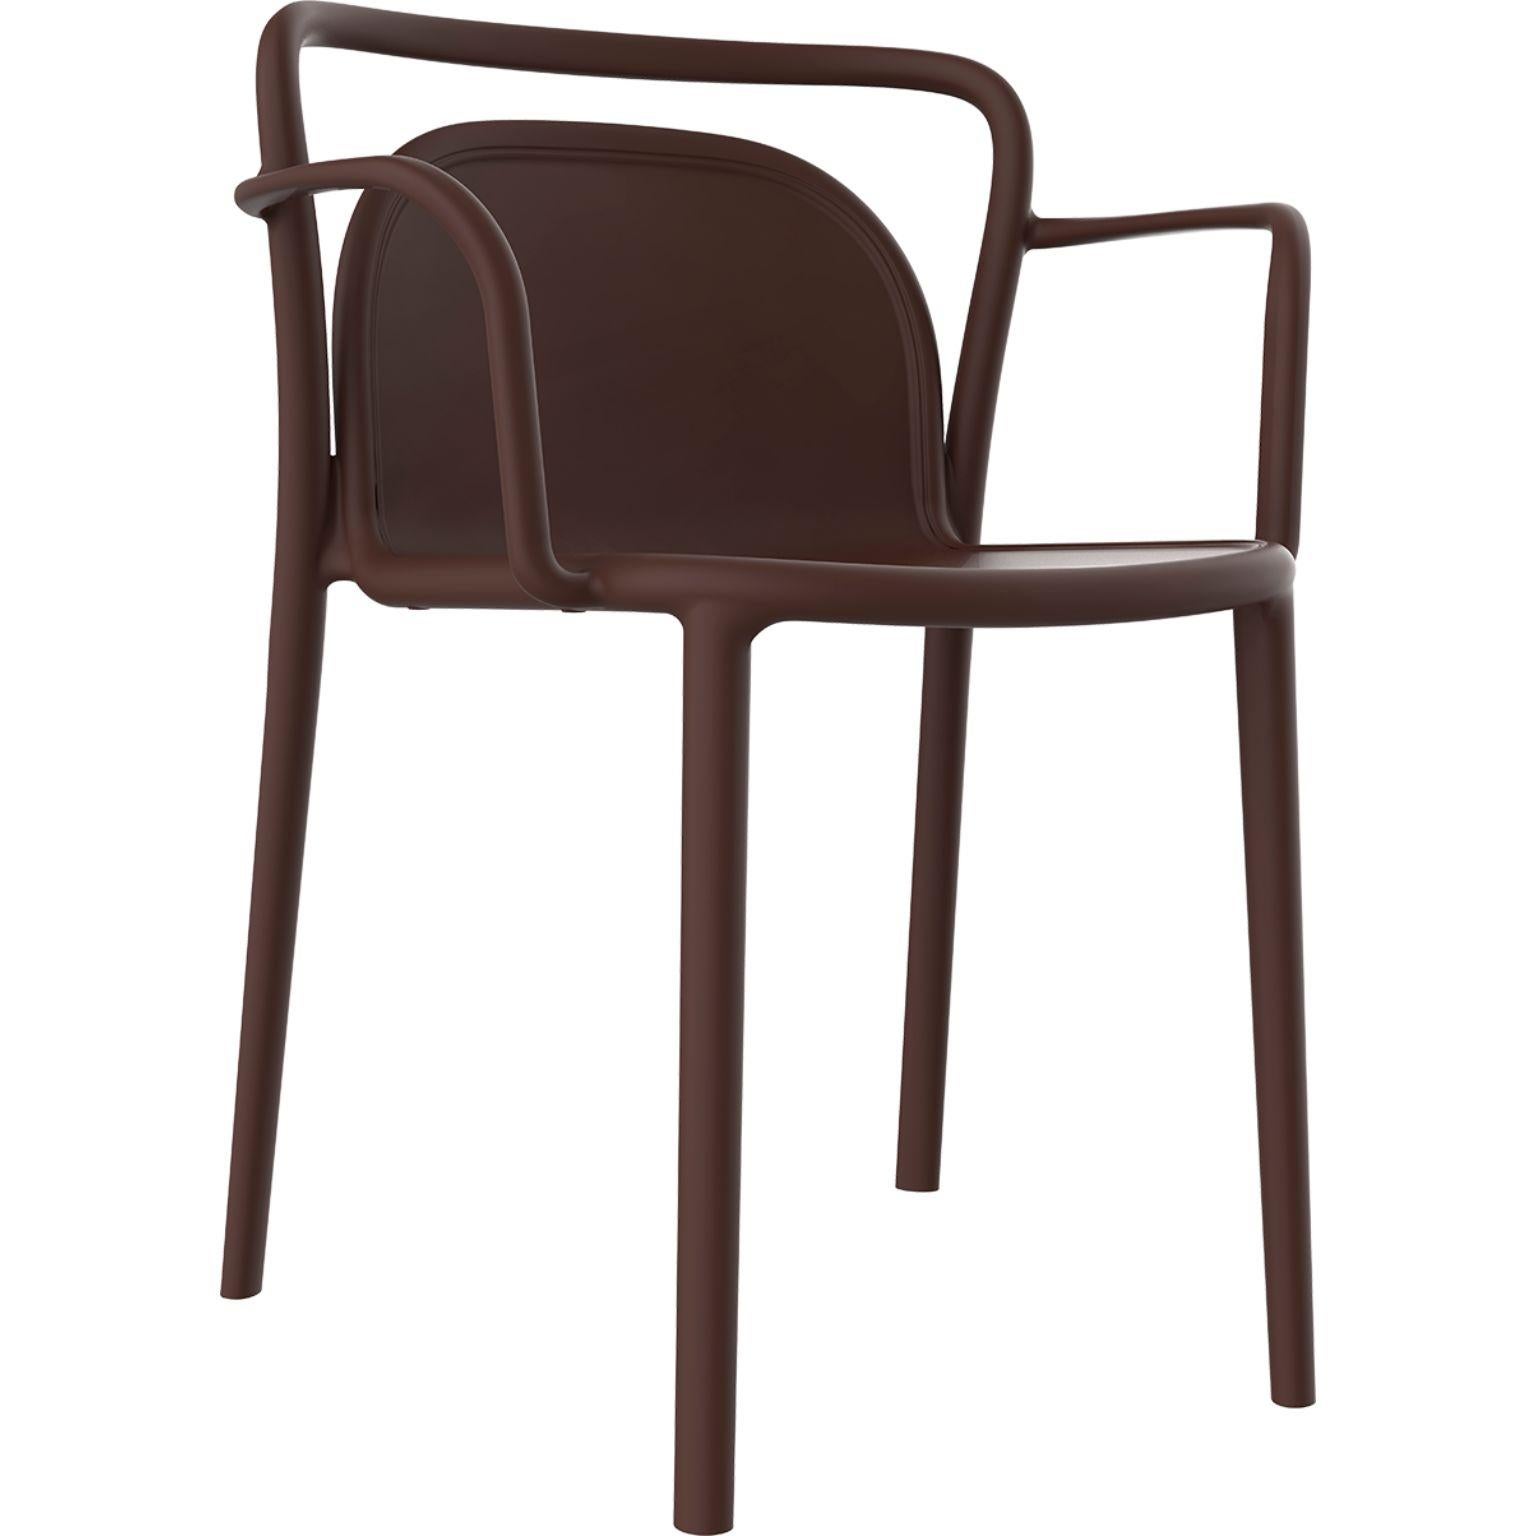 Set aus 4 classe schokoladenfarbenen Stühlen von Mowee.
Abmessungen: T52 x B52 x H77 cm (Sitzhöhe 45 cm).
MATERIAL: Polypropylenharz mit Glasfasern.
Gewicht: 4.6 kg
Auch in verschiedenen Farben erhältlich. Optional kann ein Kissen hinzugefügt